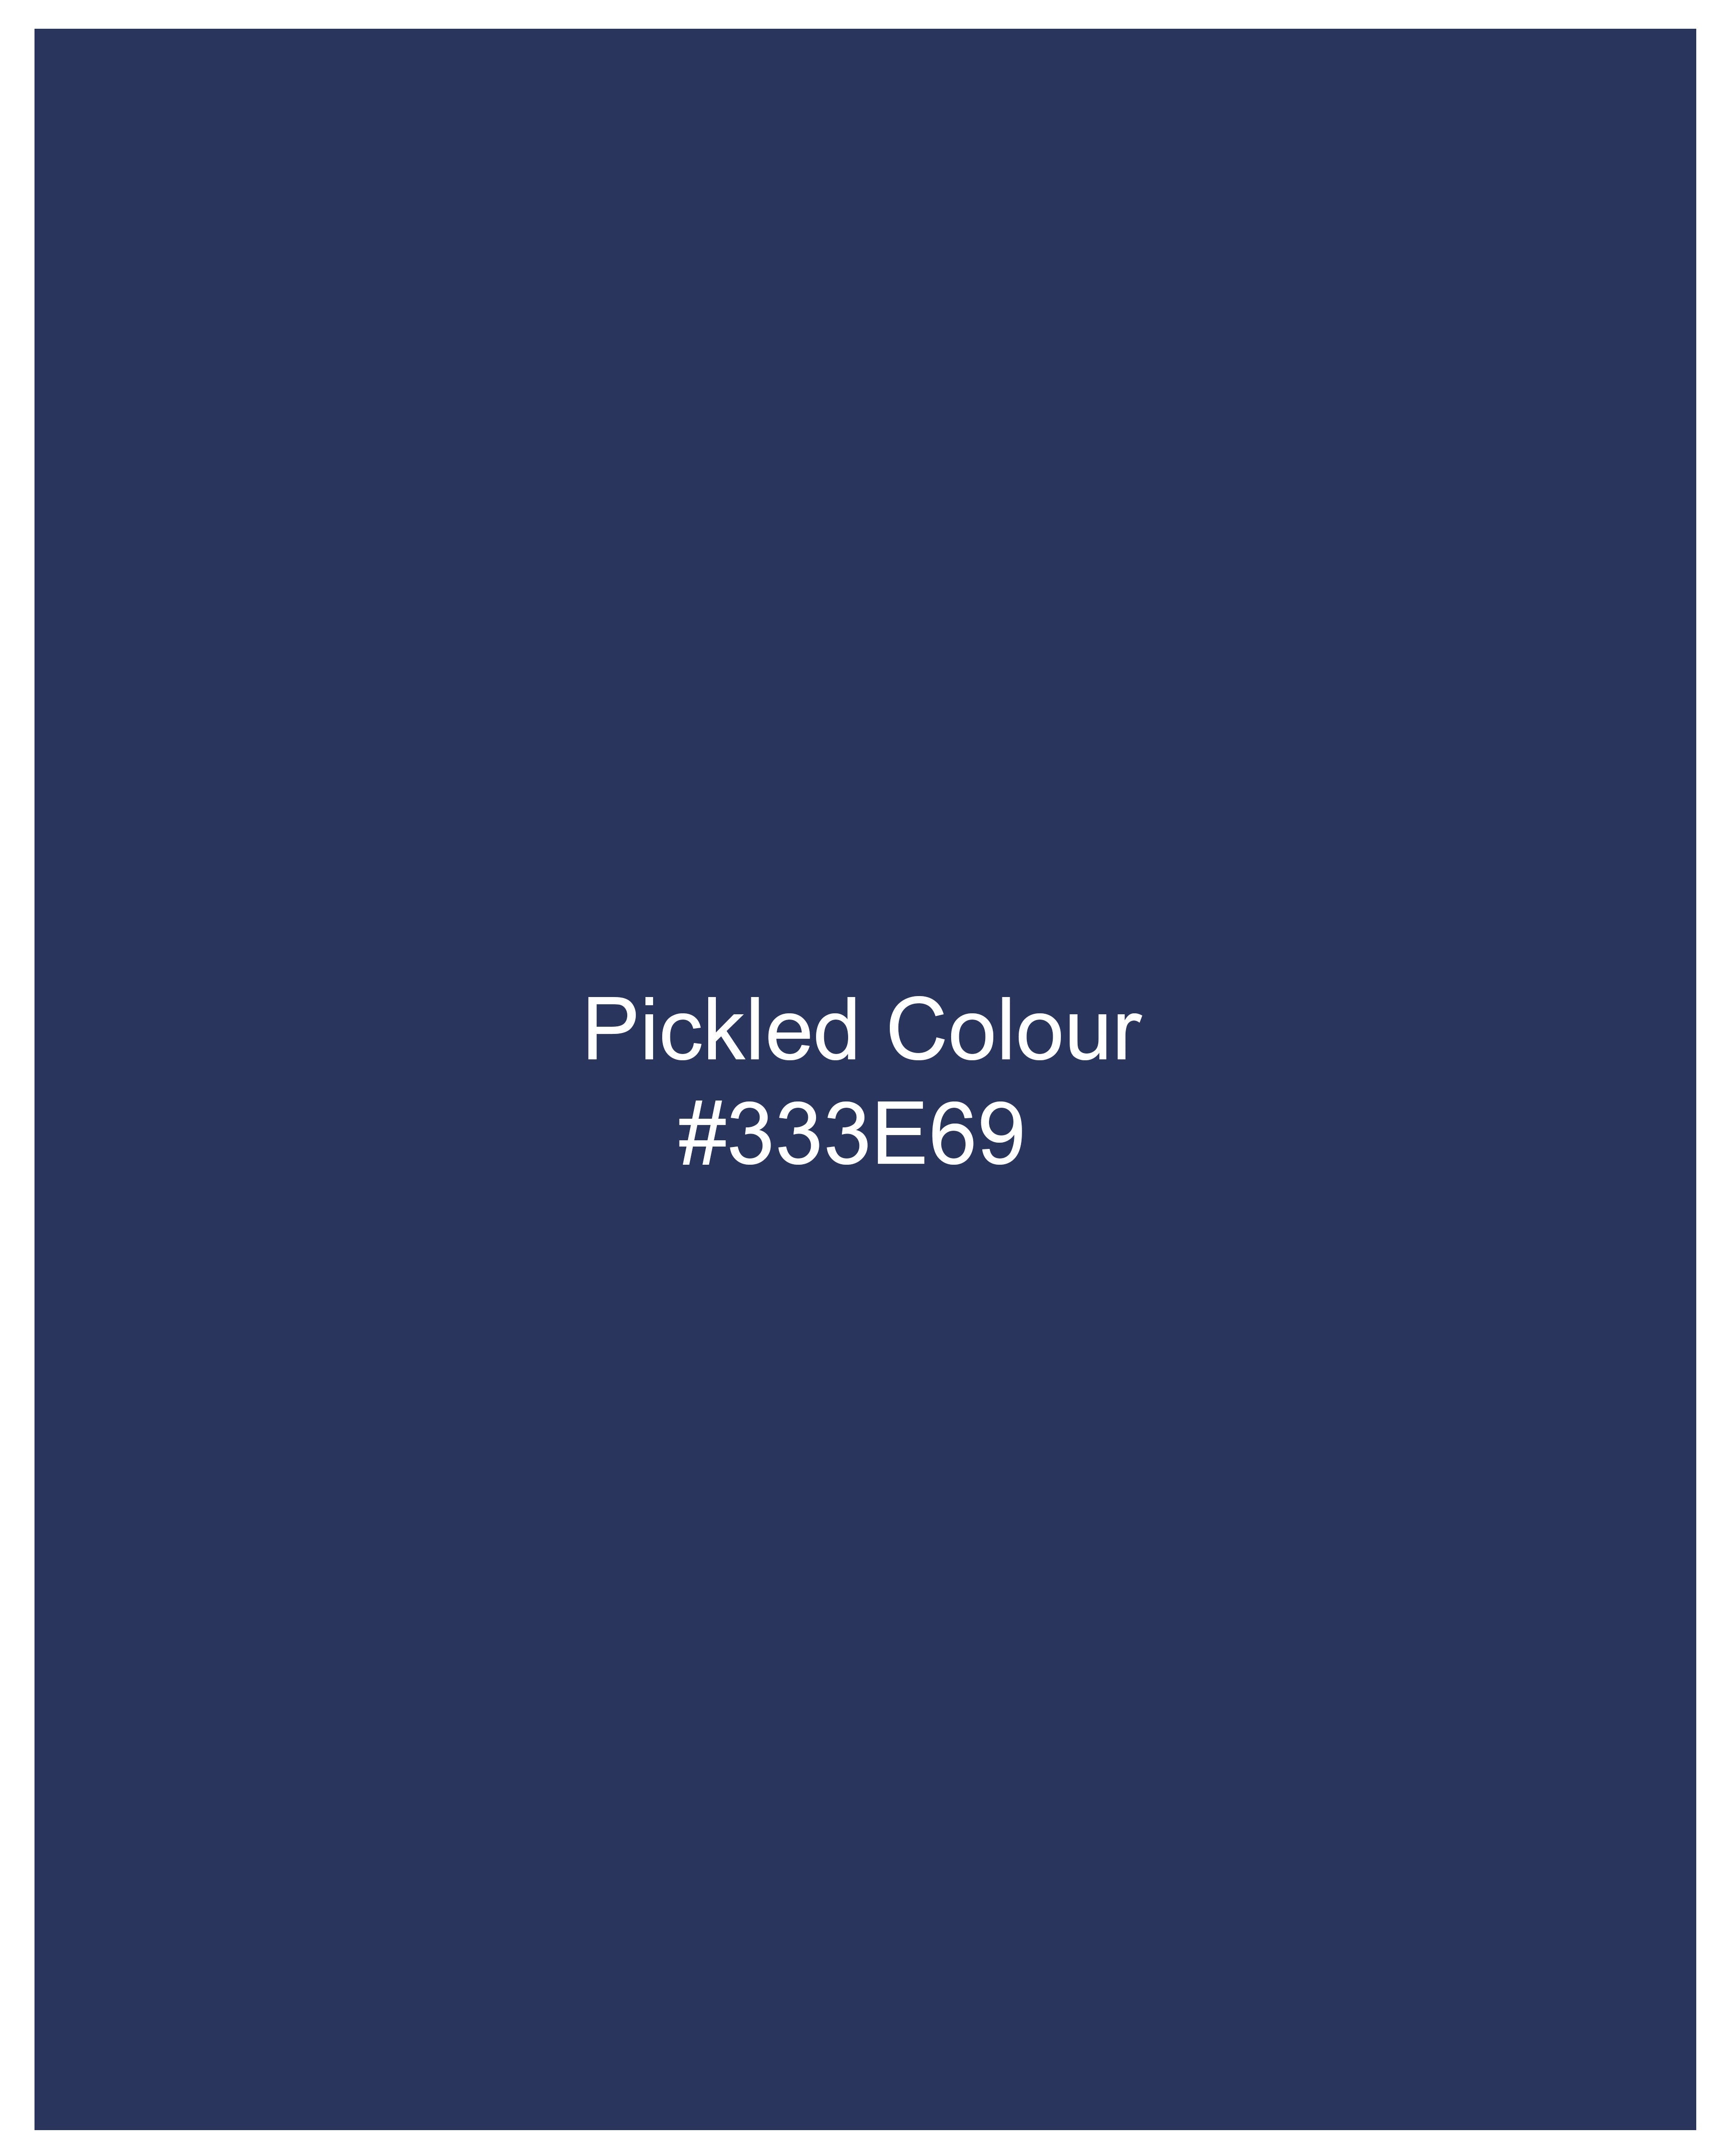 Pickled Blue Windowpane and White Waistcoat V2369-36, V2369-38, V2369-40, V2369-42, V2369-44, V2369-46, V2369-48, V2369-50, V2369-52, V2369-54, V2369-56, V2369-58, V2369-60